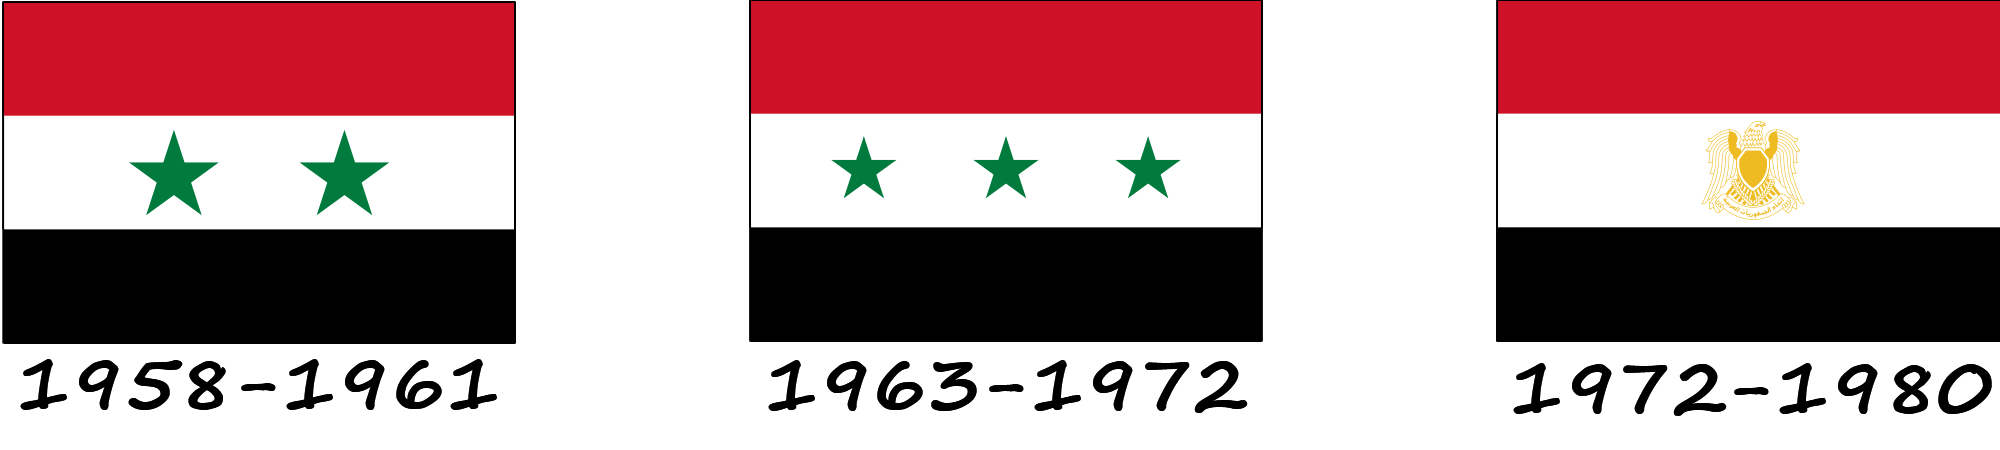 Histoire du drapeau syrien. Comment le drapeau syrien a-t-il évolué ?